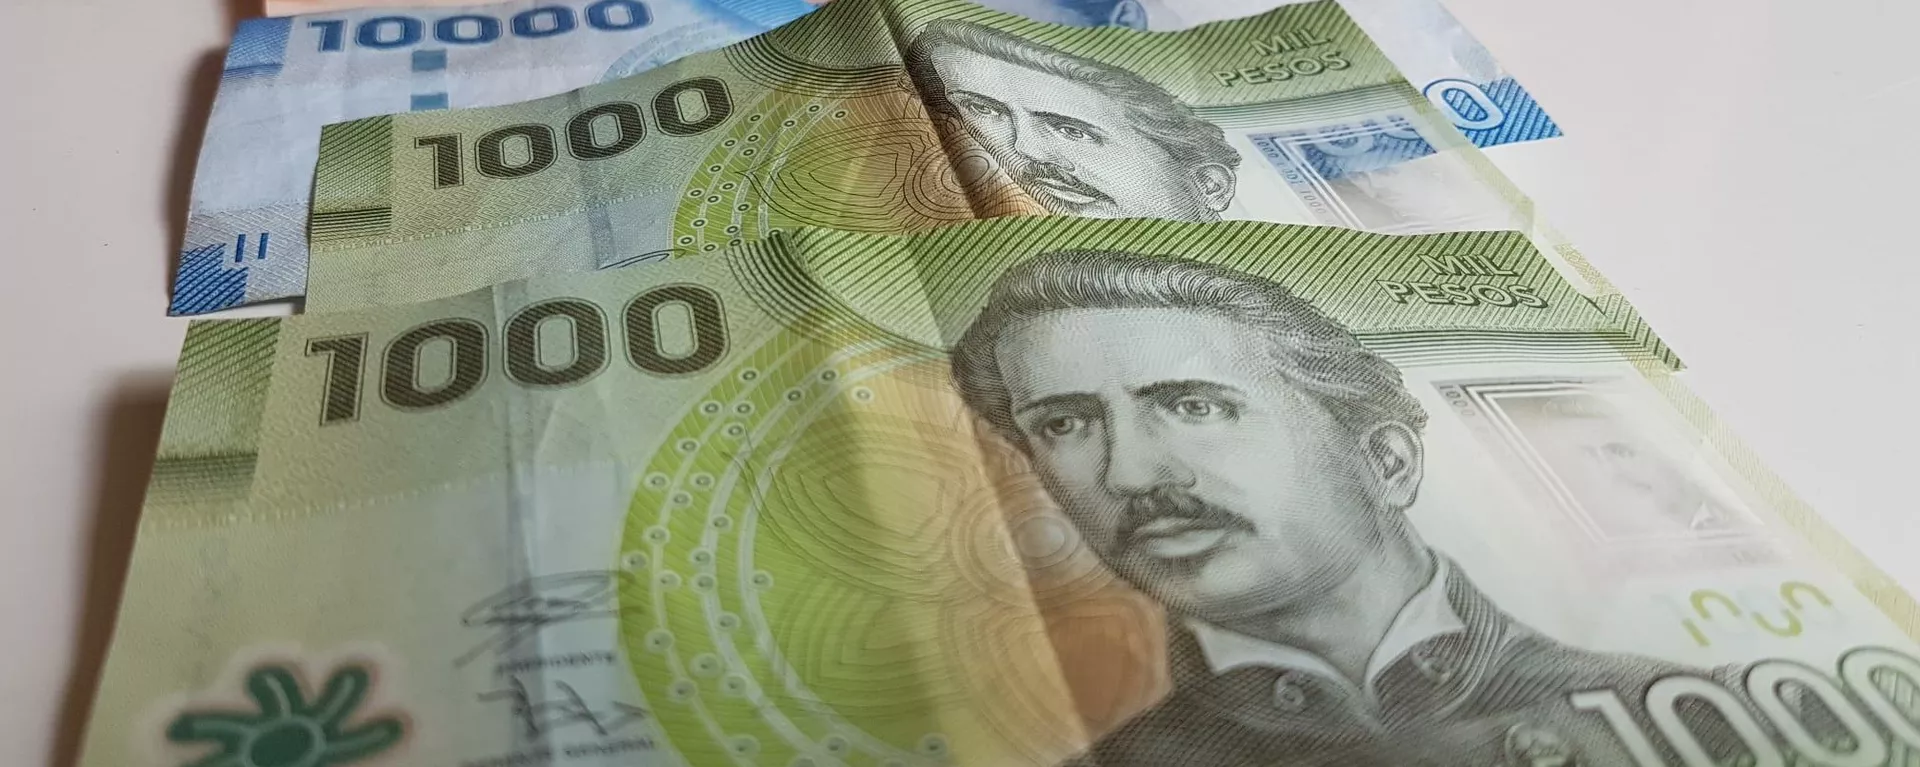 Nivel de ahorro de los chilenos registra su nivel más bajo en 10 años